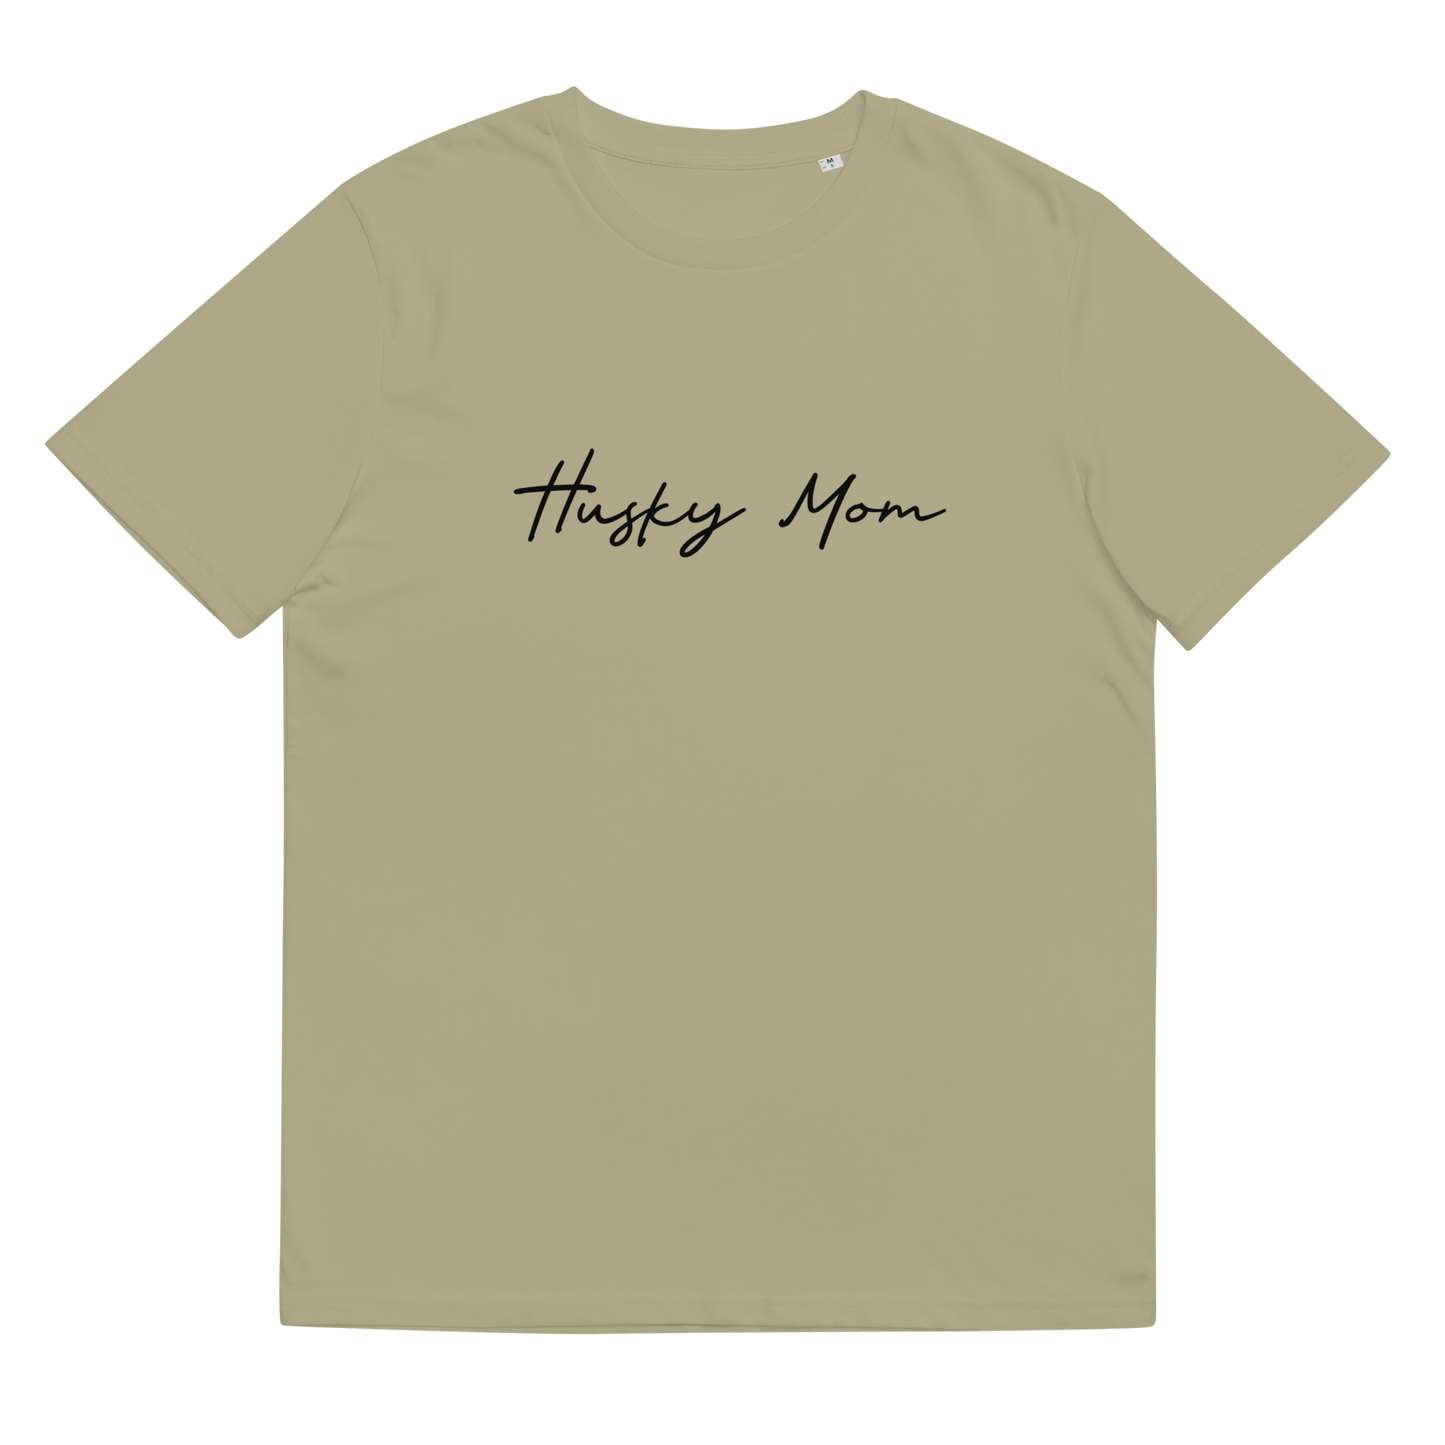 Custom Dog Mom T-shirt